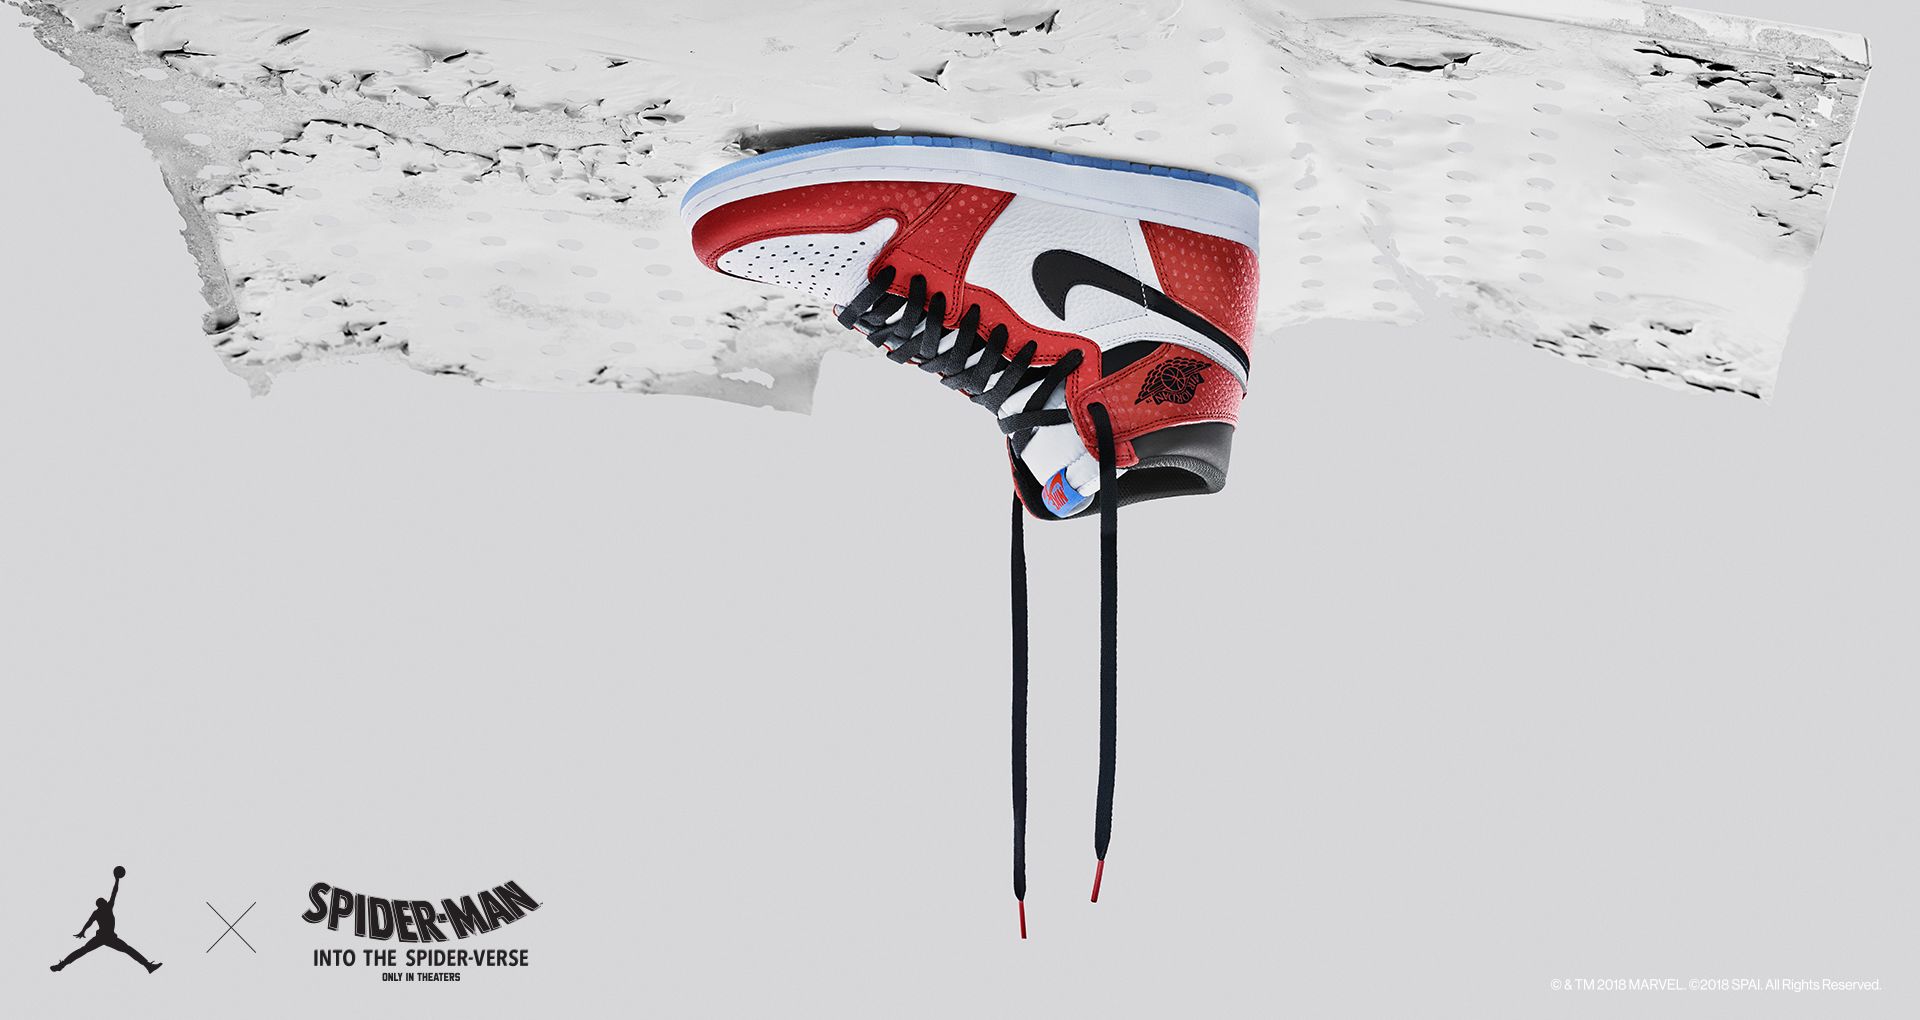 Air Jordan 1 'Origin Story' Release Date. Nike SNKRS GB